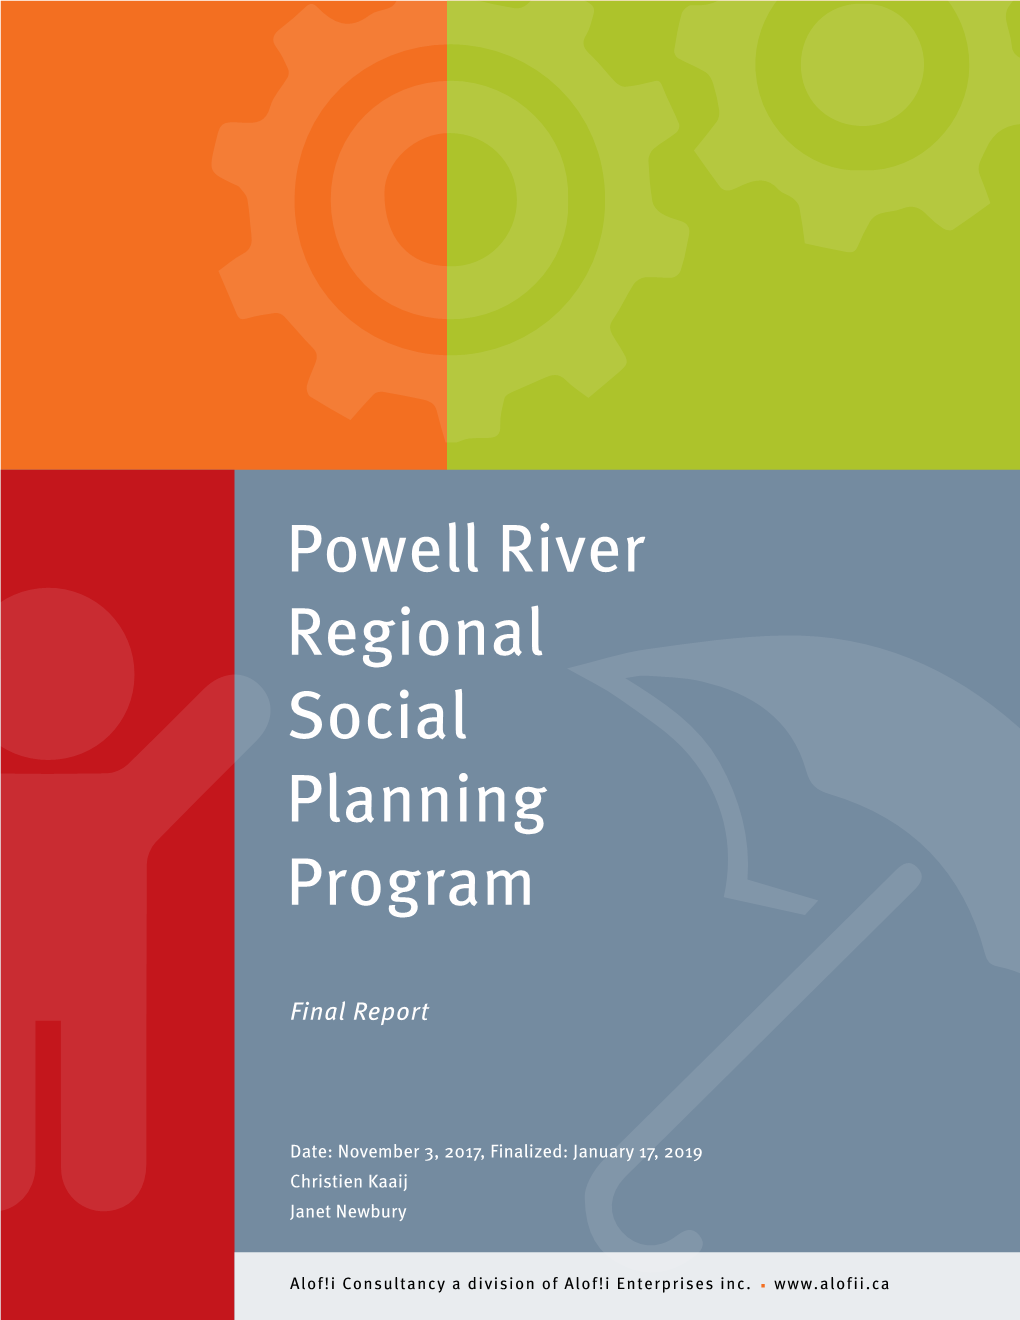 Powell River Regional Social Planning Program